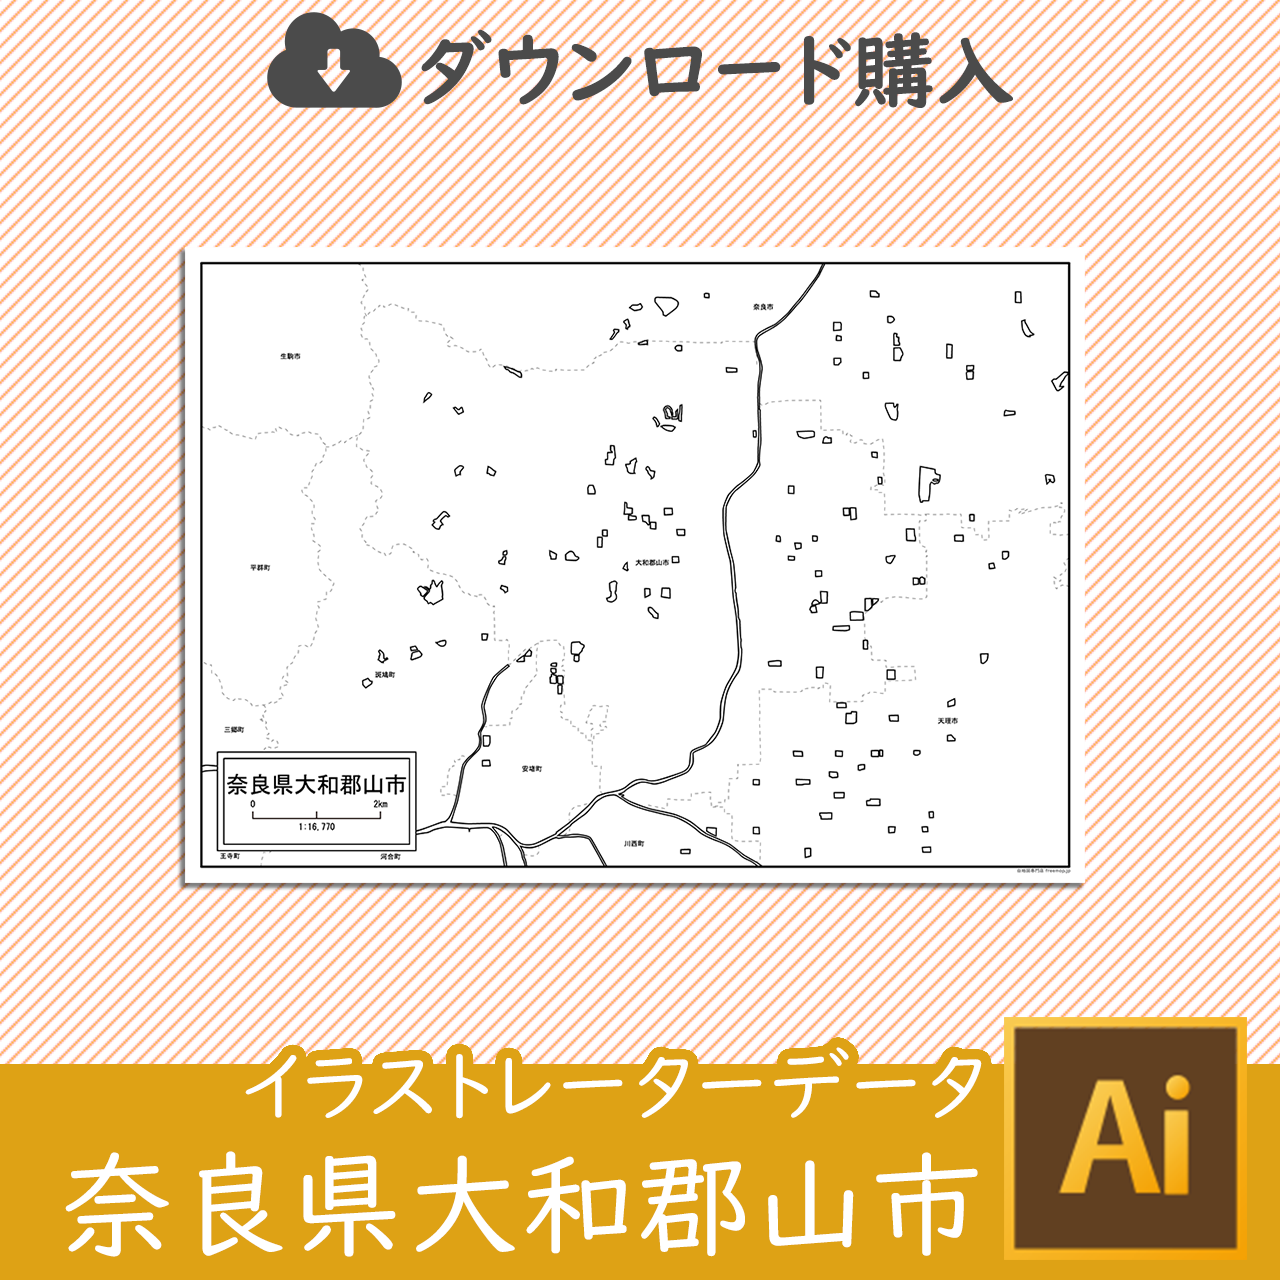 大和郡山市のaiデータのサムネイル画像